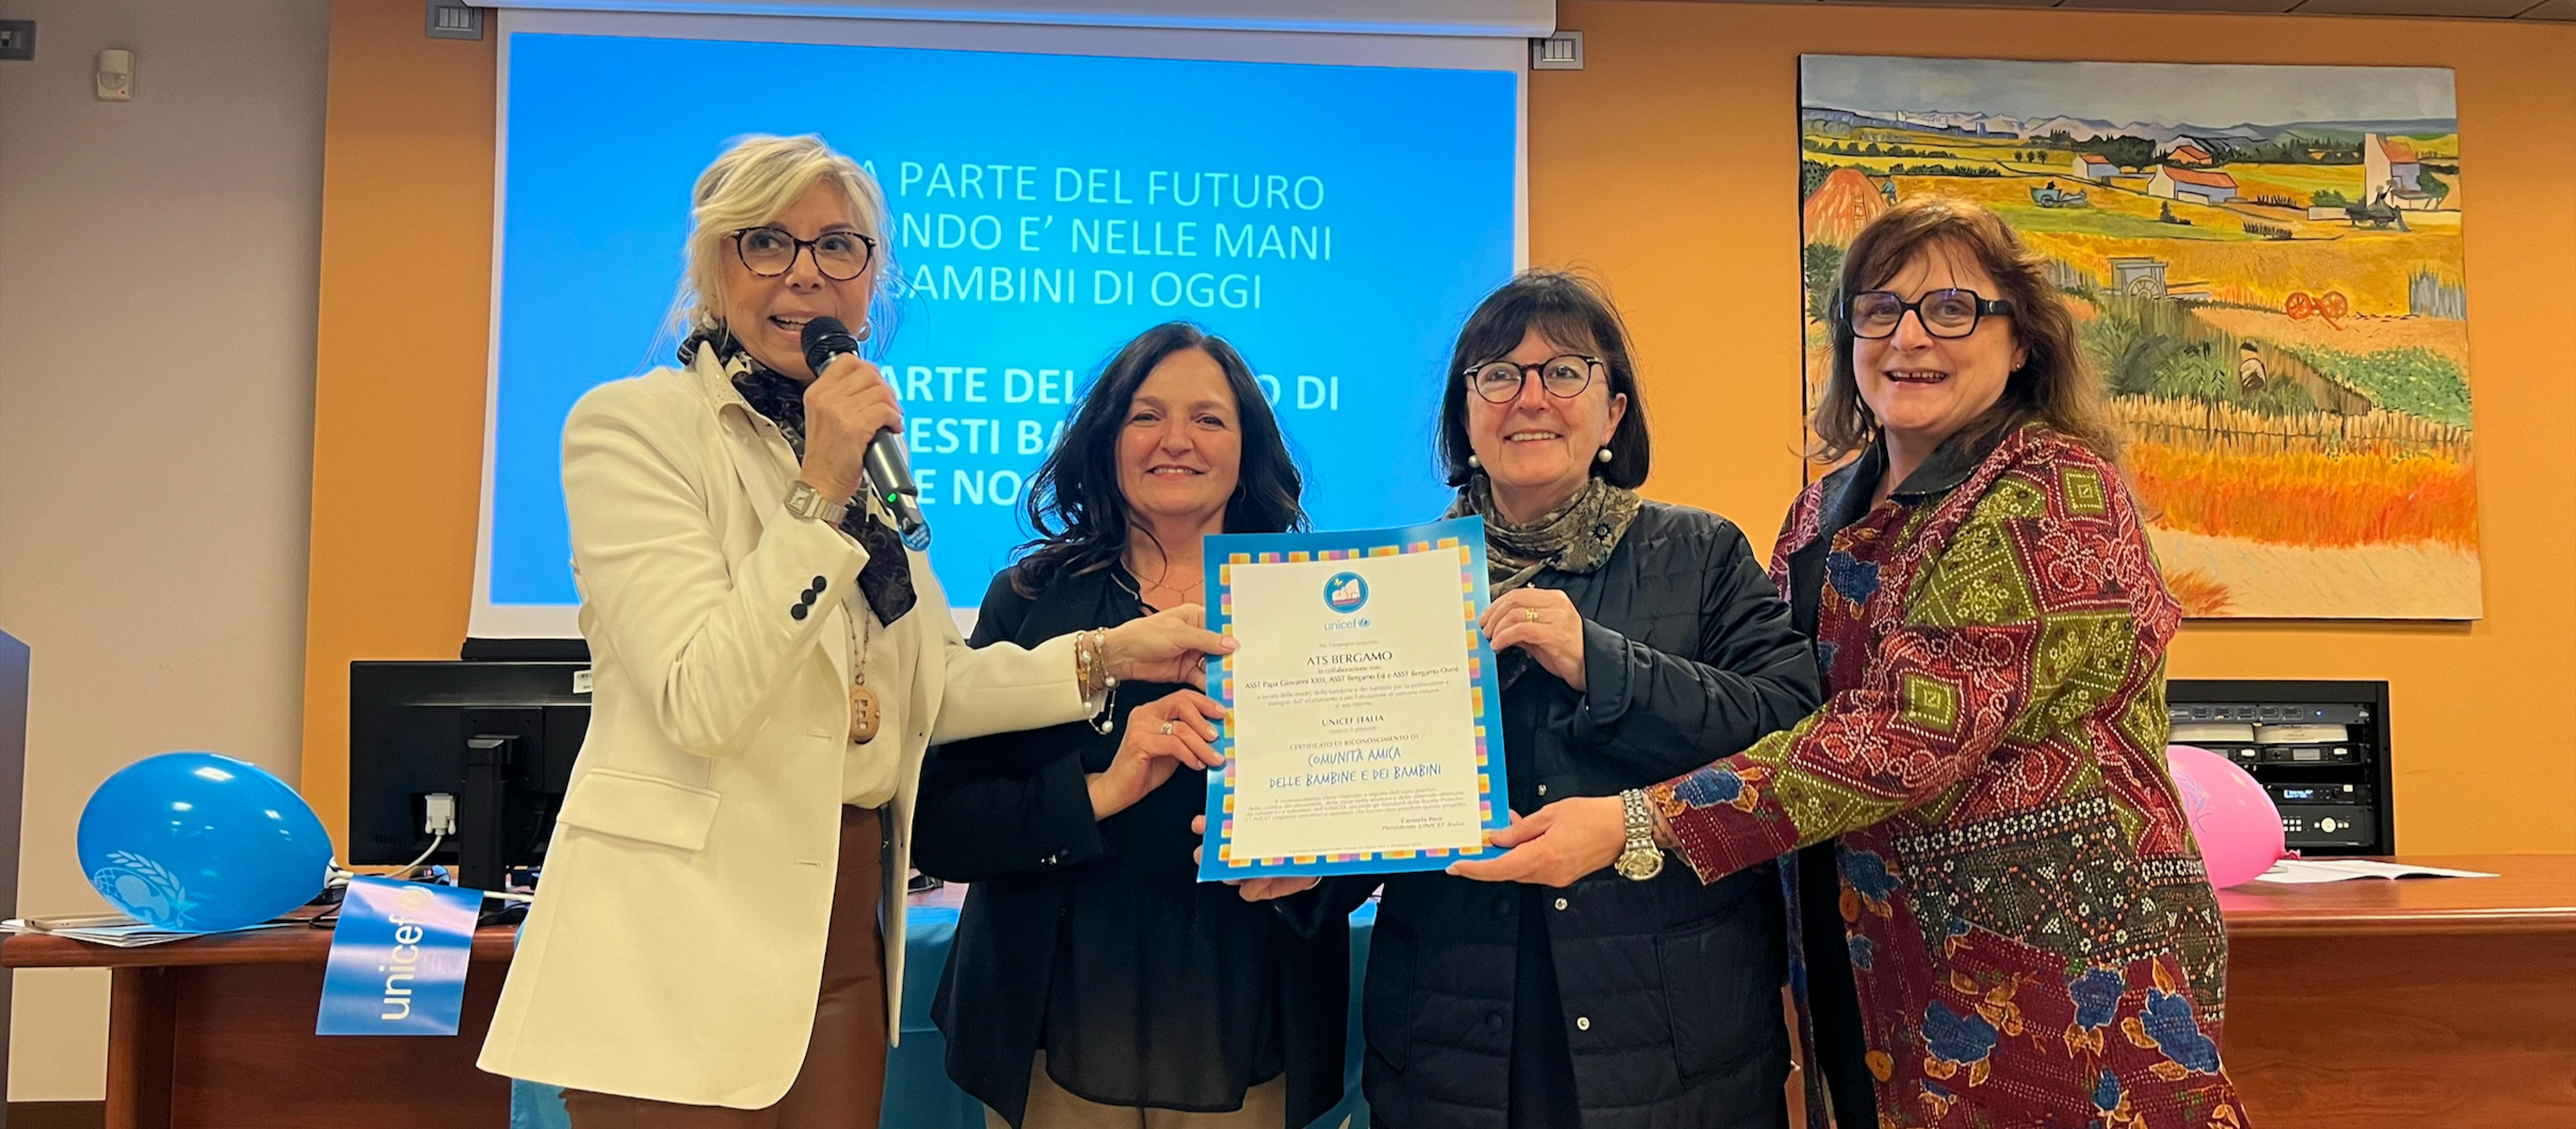 Elisabetta Paganessi, Presidente Comitato UNICEF Bergamo consegna la pergamena a Nicoletta Castelli Direttore Sanitario AST Bergamo